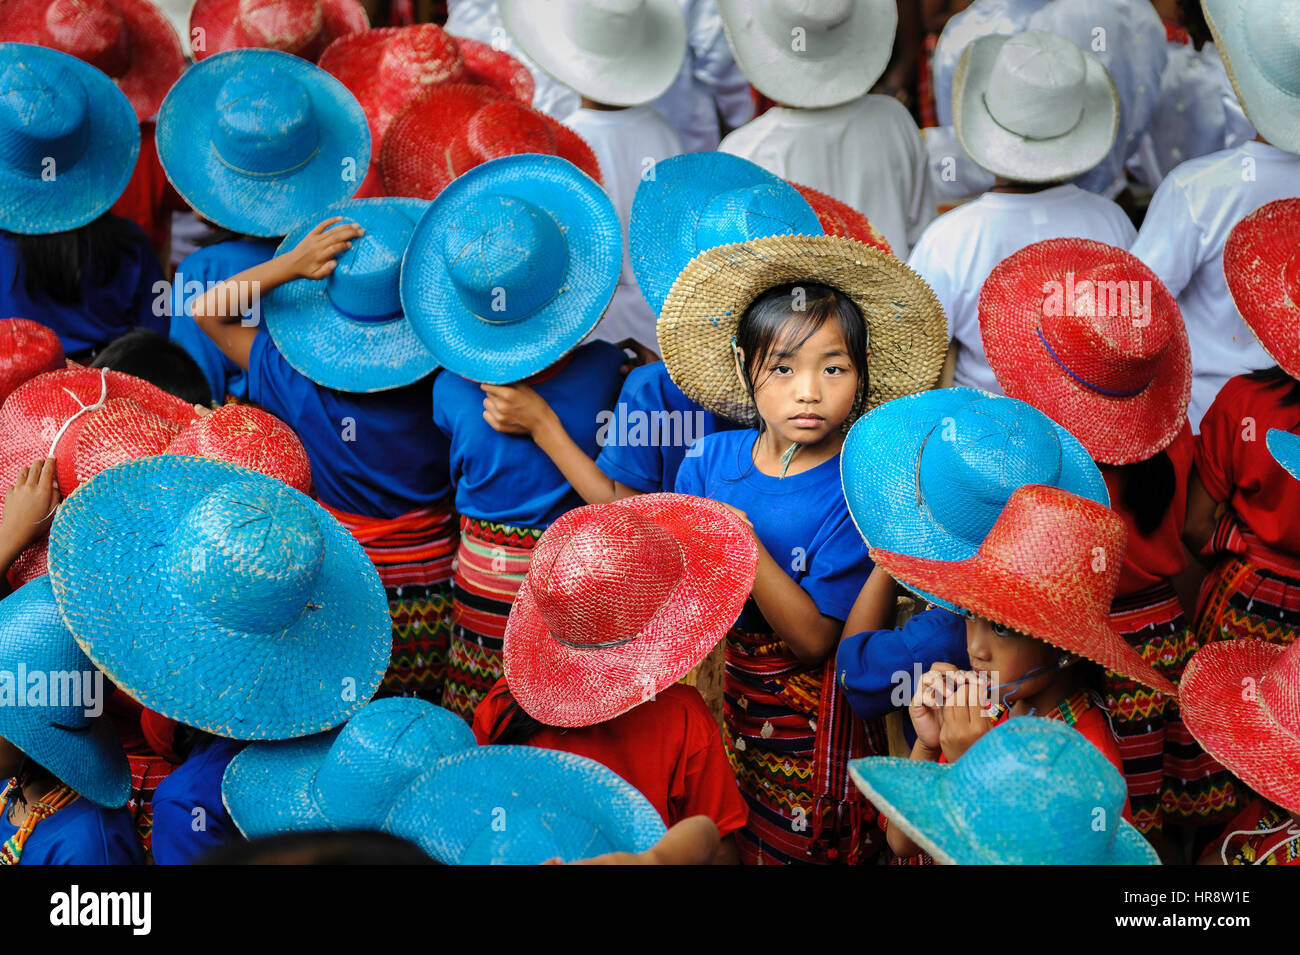 Ein Mädchen sucht die Kamera unter den vielen Kindern mit bunten hüten in einer Feier. Stockfoto